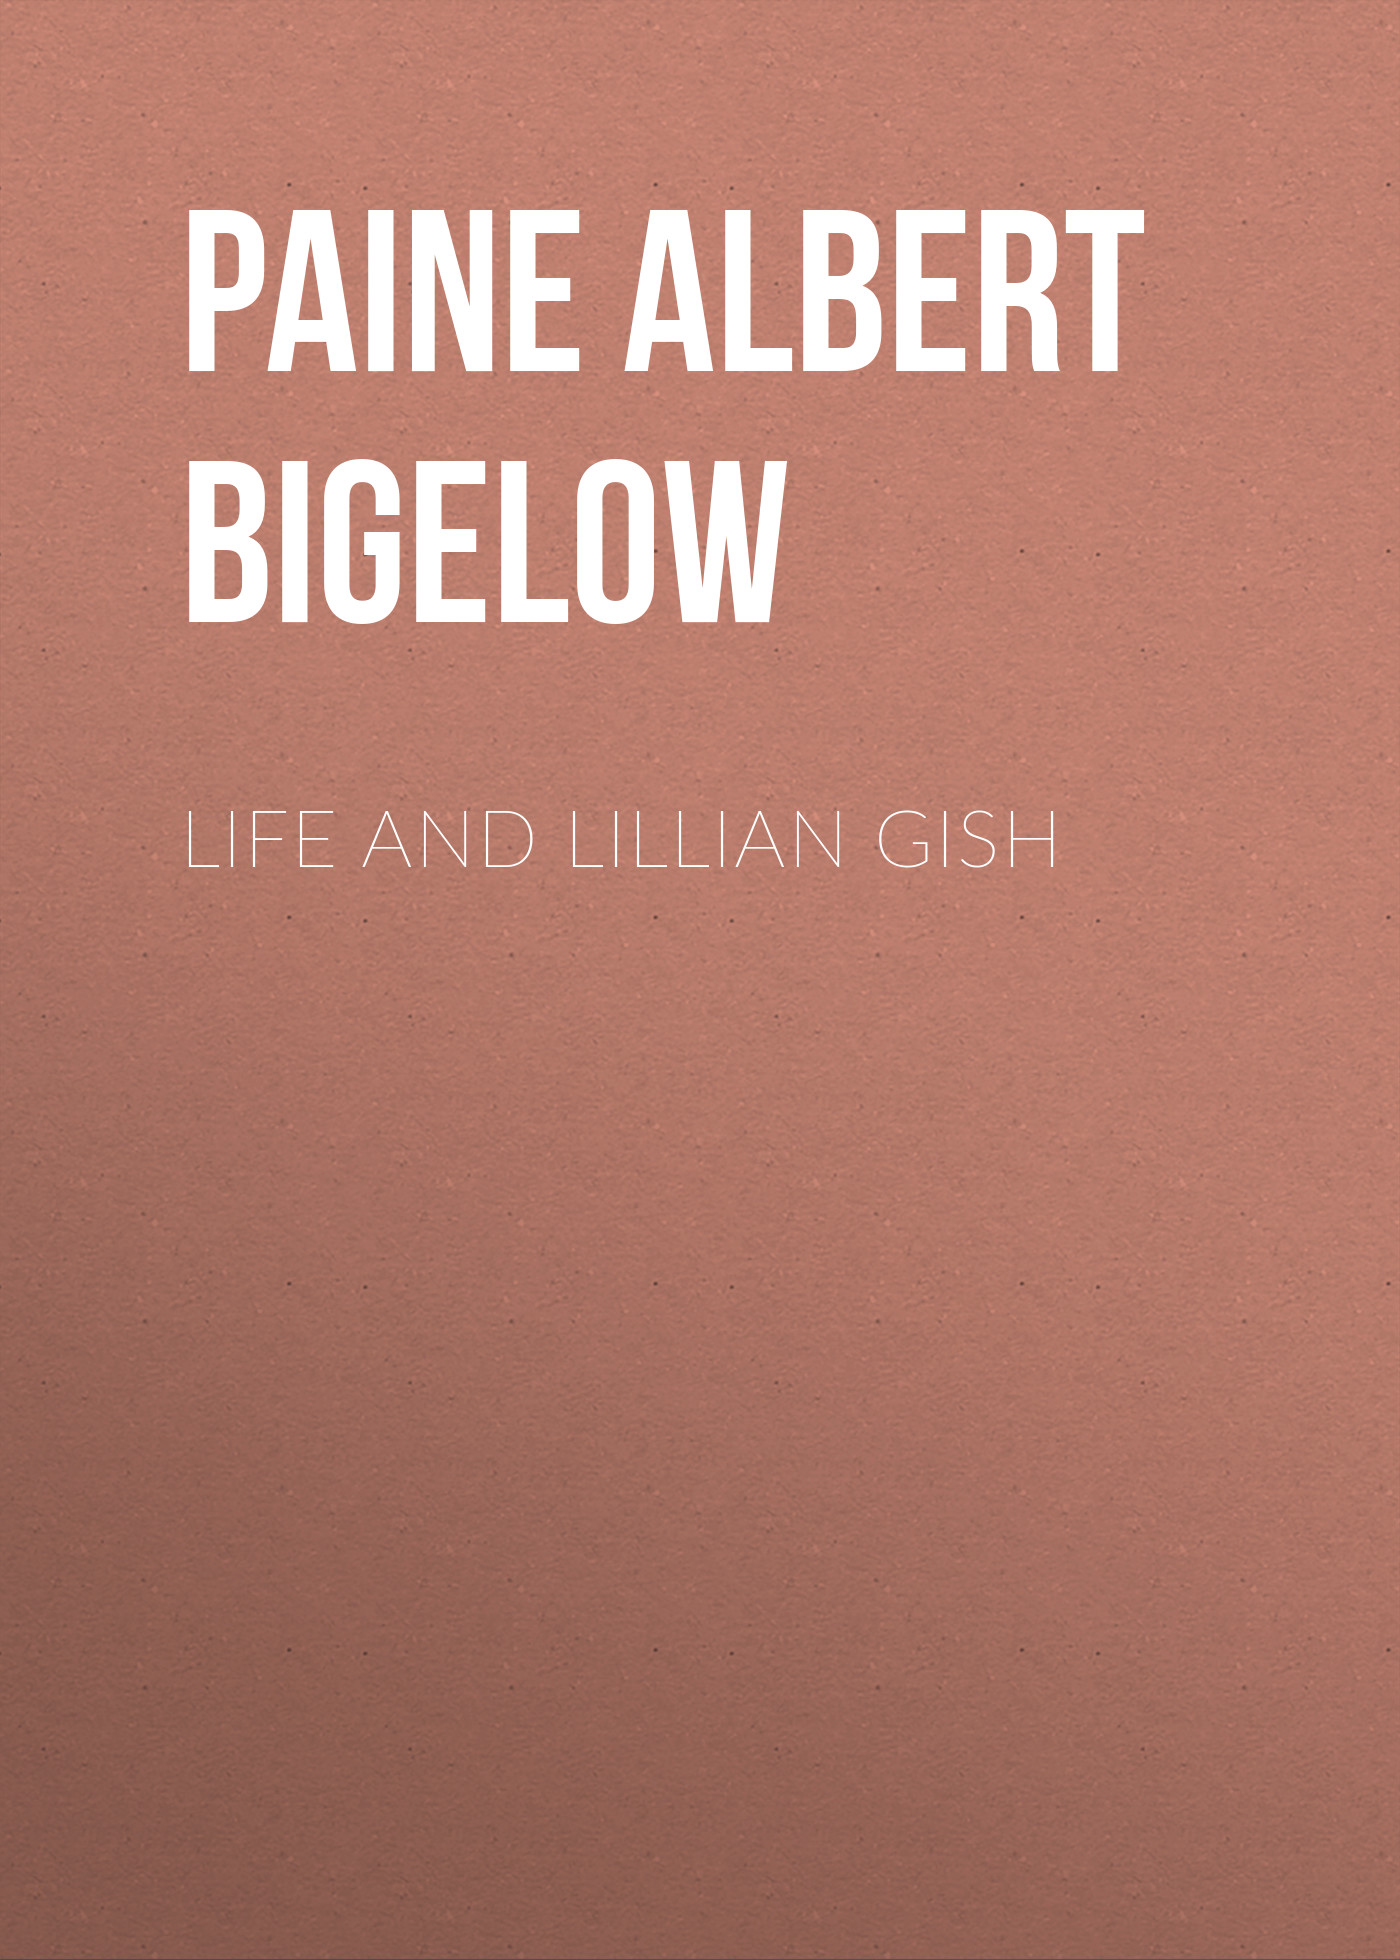 Книга Life and Lillian Gish из серии , созданная Albert Paine, может относится к жанру Зарубежная классика, Зарубежная старинная литература. Стоимость электронной книги Life and Lillian Gish с идентификатором 34842902 составляет 0 руб.